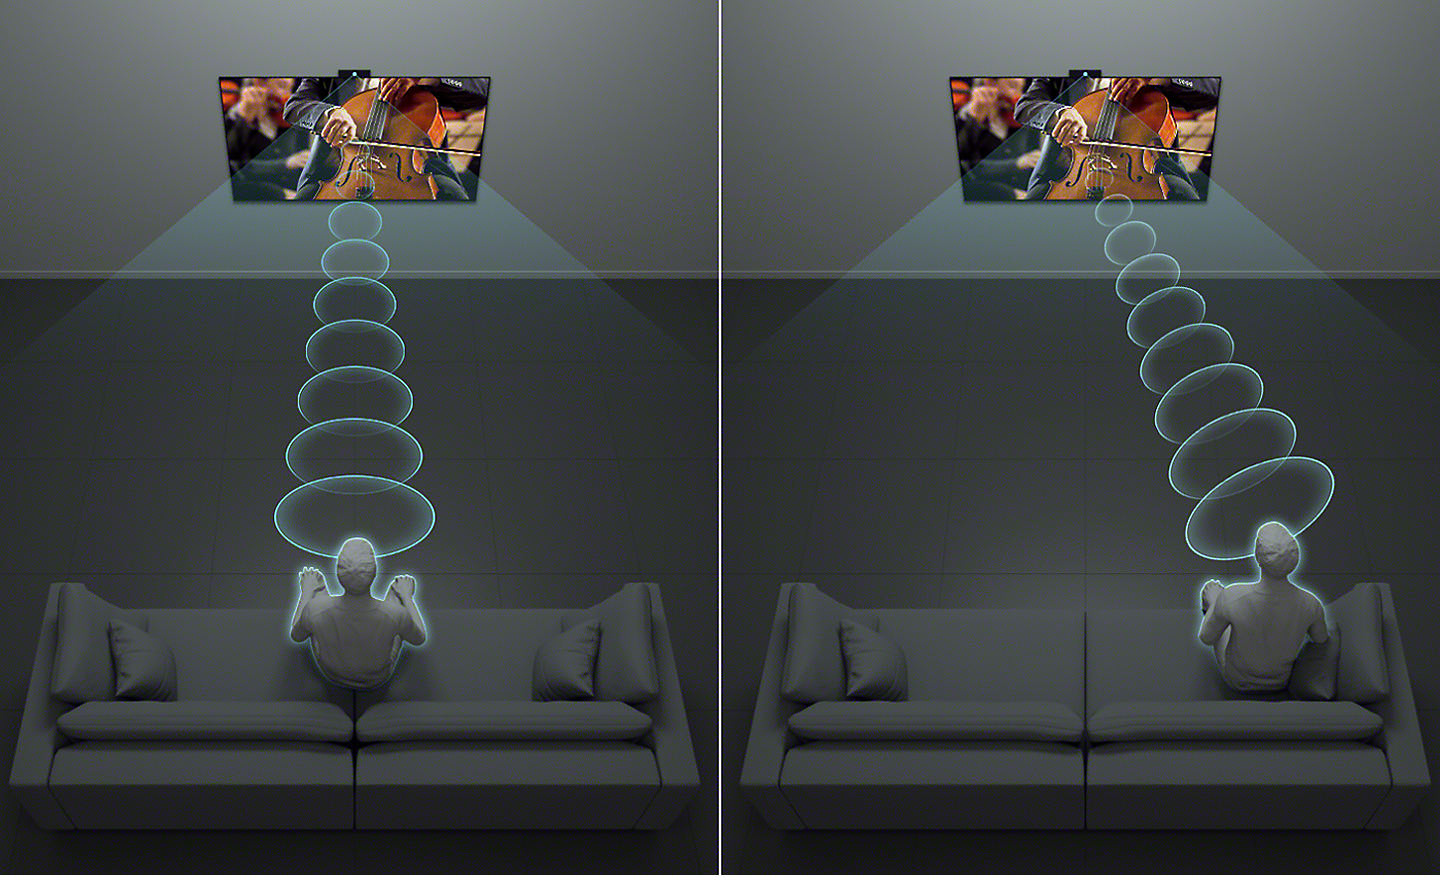 Immagine divisa che mostra una persona che ascolta la TV da davanti e una persona che ascolta la TV da un lato